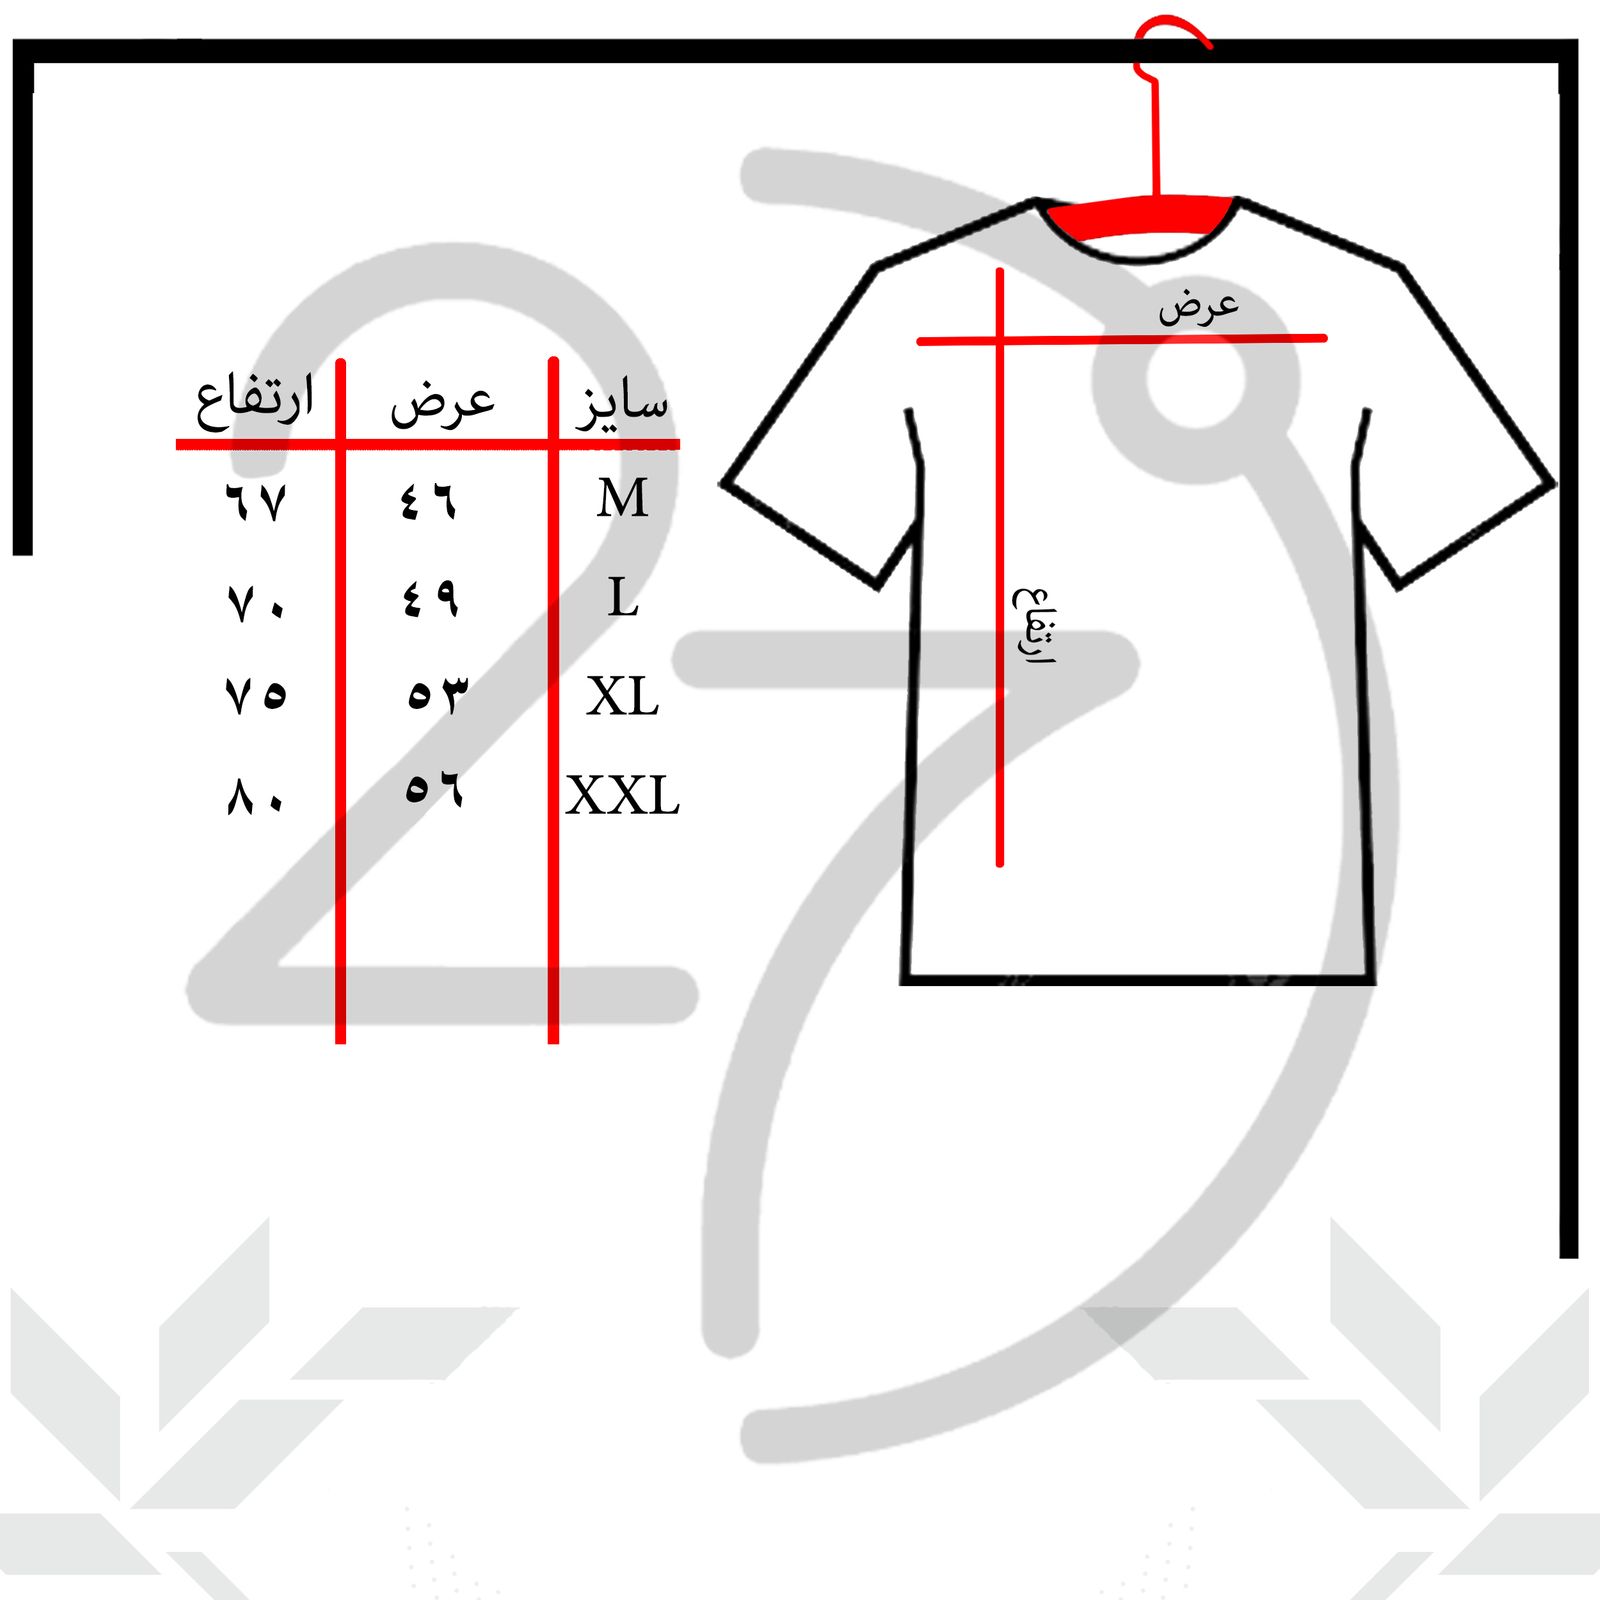 تی شرت آستین کوتاه مردانه 27 مدل Stranger things کد KV90 رنگ سفید -  - 3